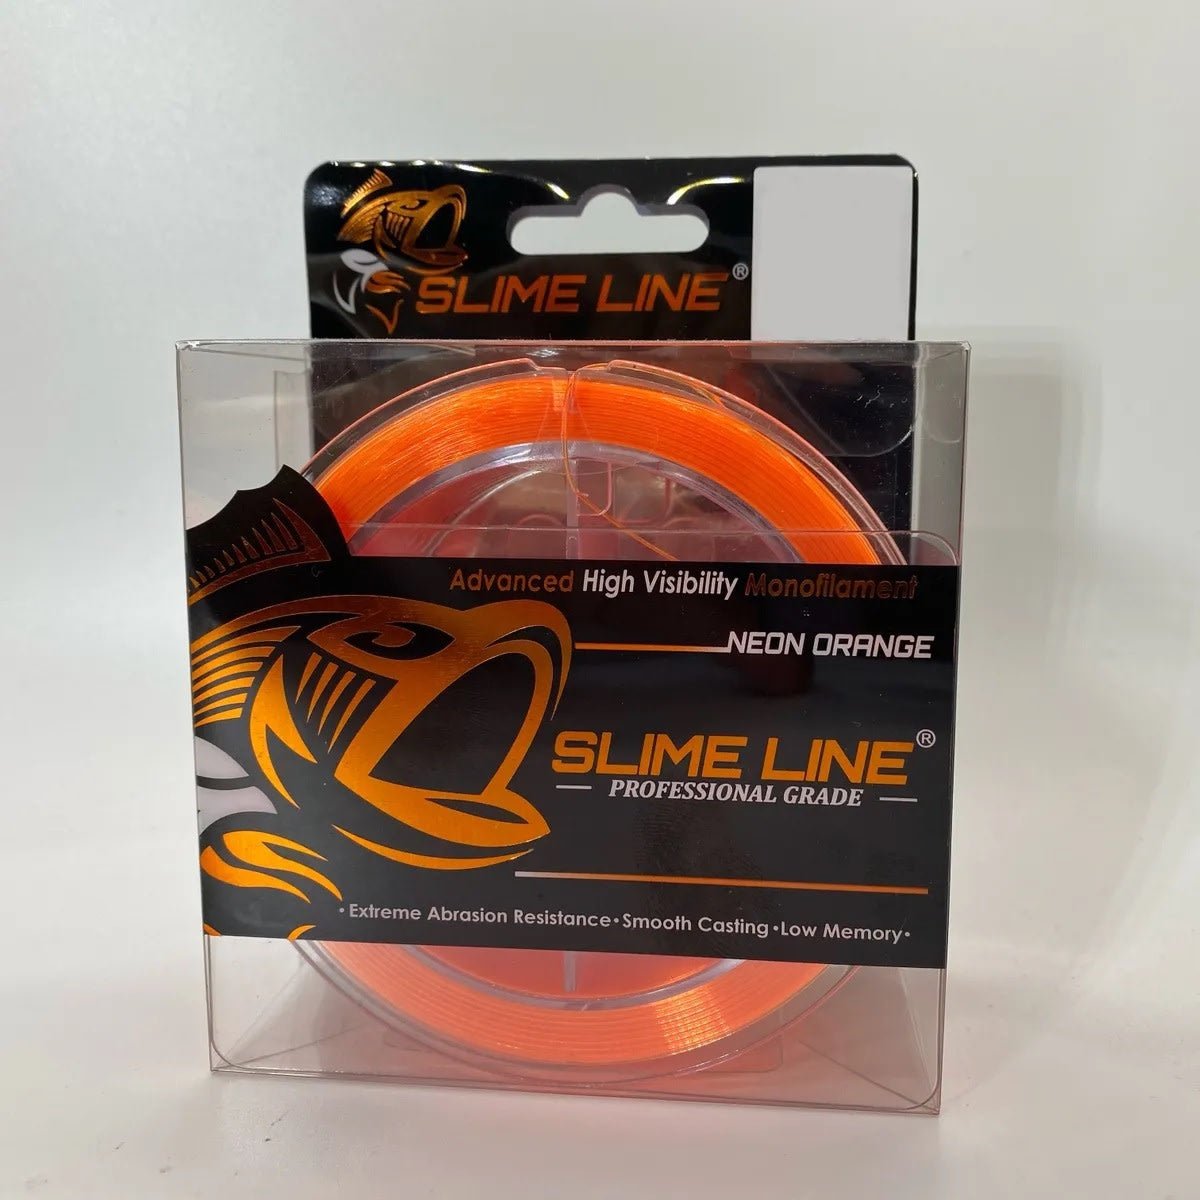 Stren Sops6-26 Original Clear Blue 6lb Monofilament Fishing Line for sale  online